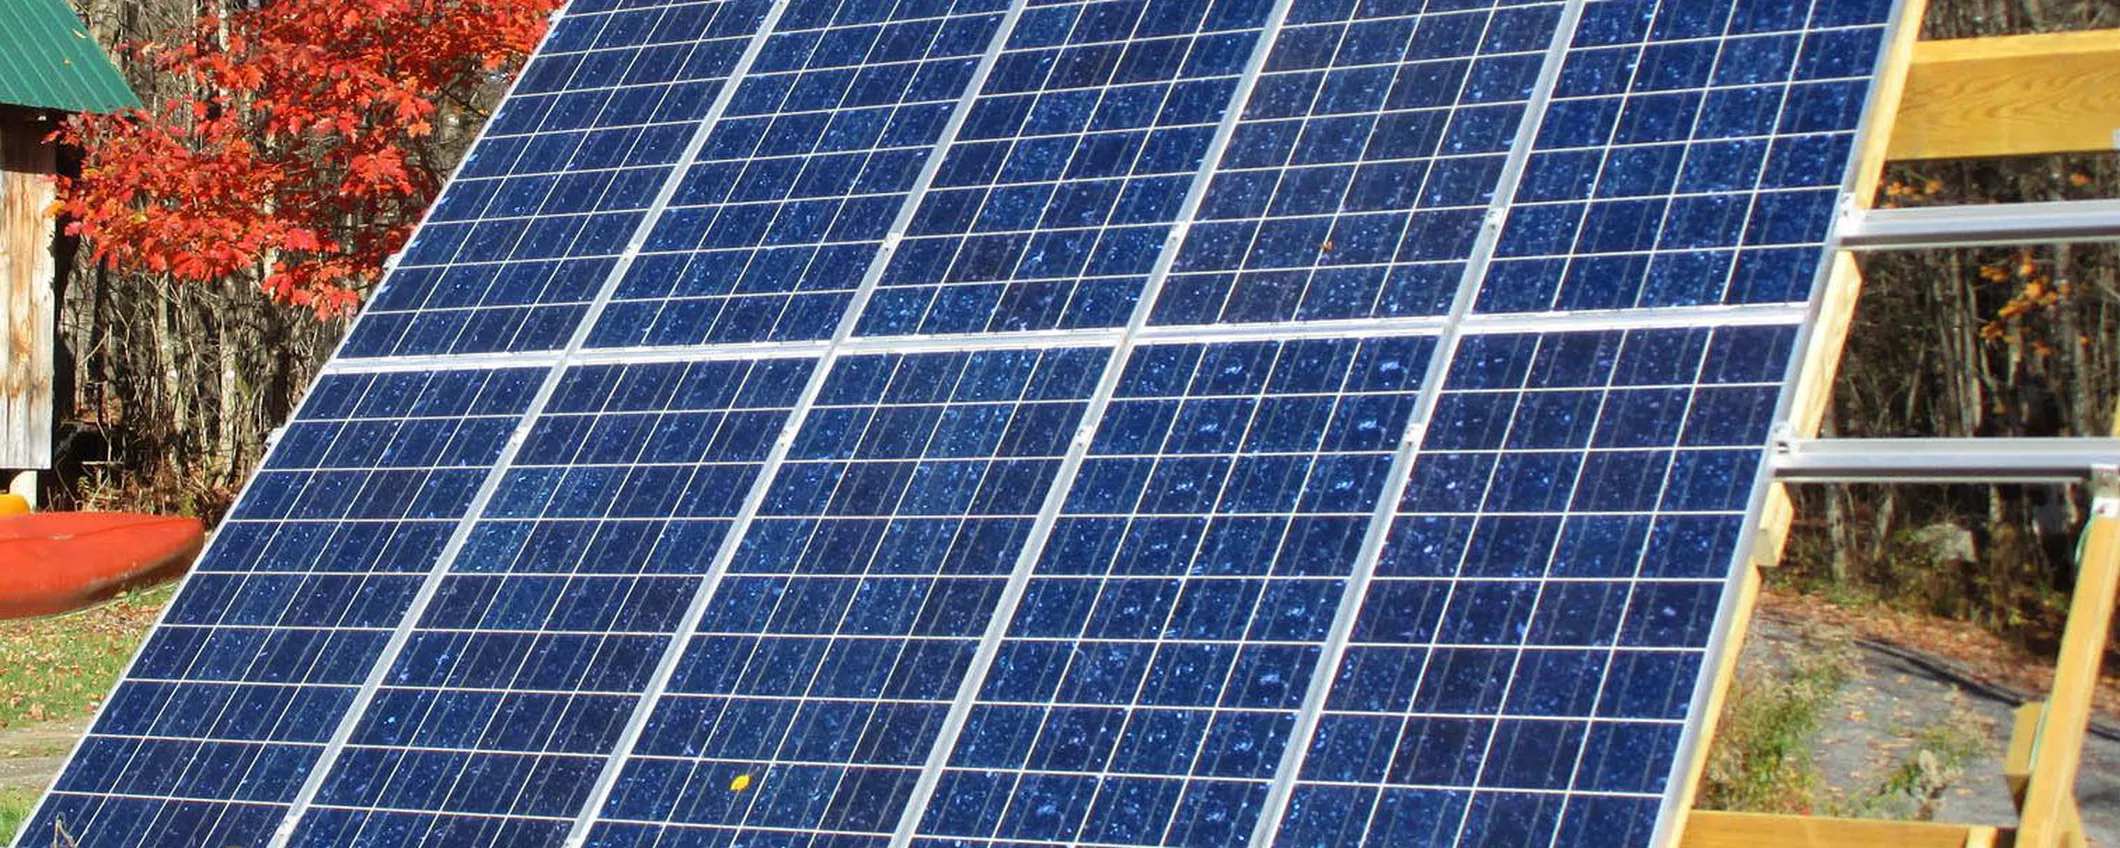 Caro Bollette, SOS kit fotovoltaico: l'energia ELETTRICA te la fai-da-te